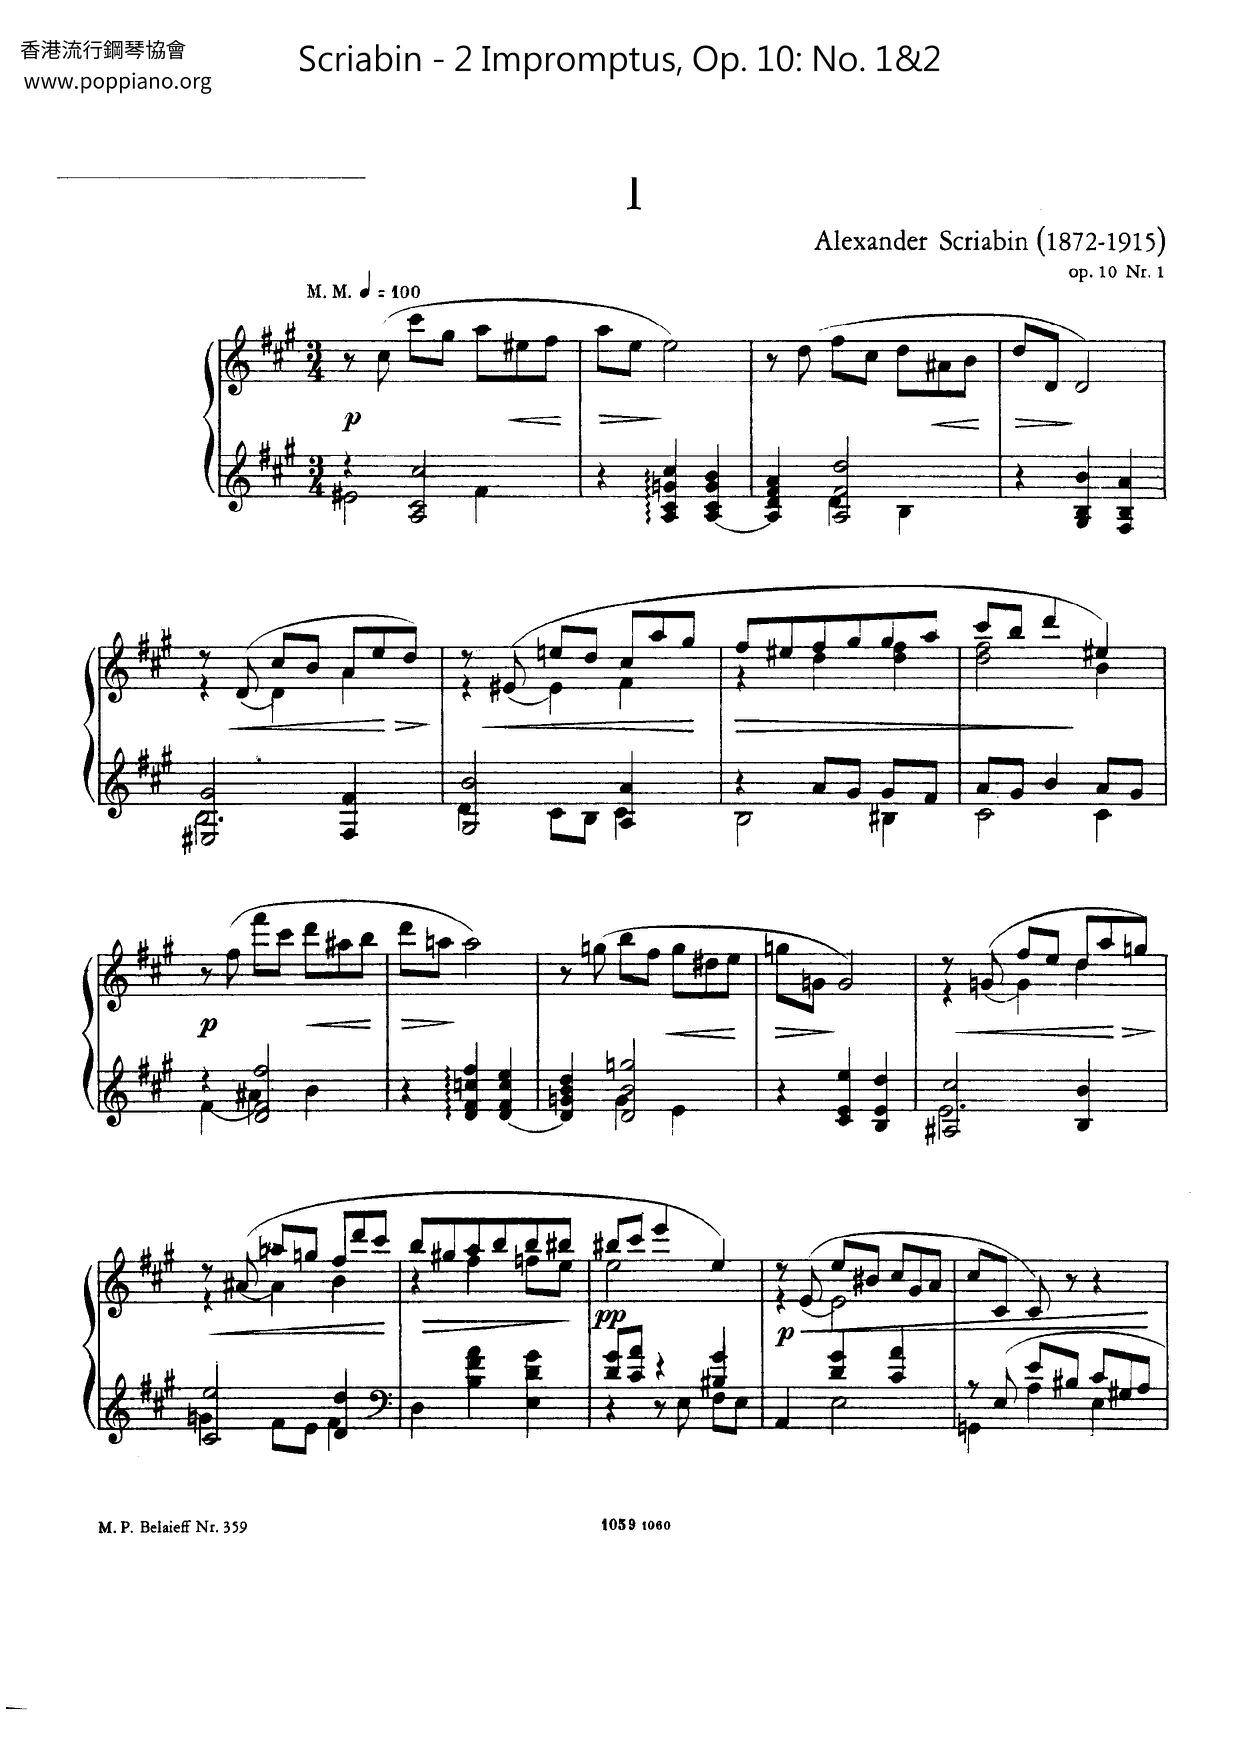 2 Impromptus, Op. 10: No. 1&2 Score